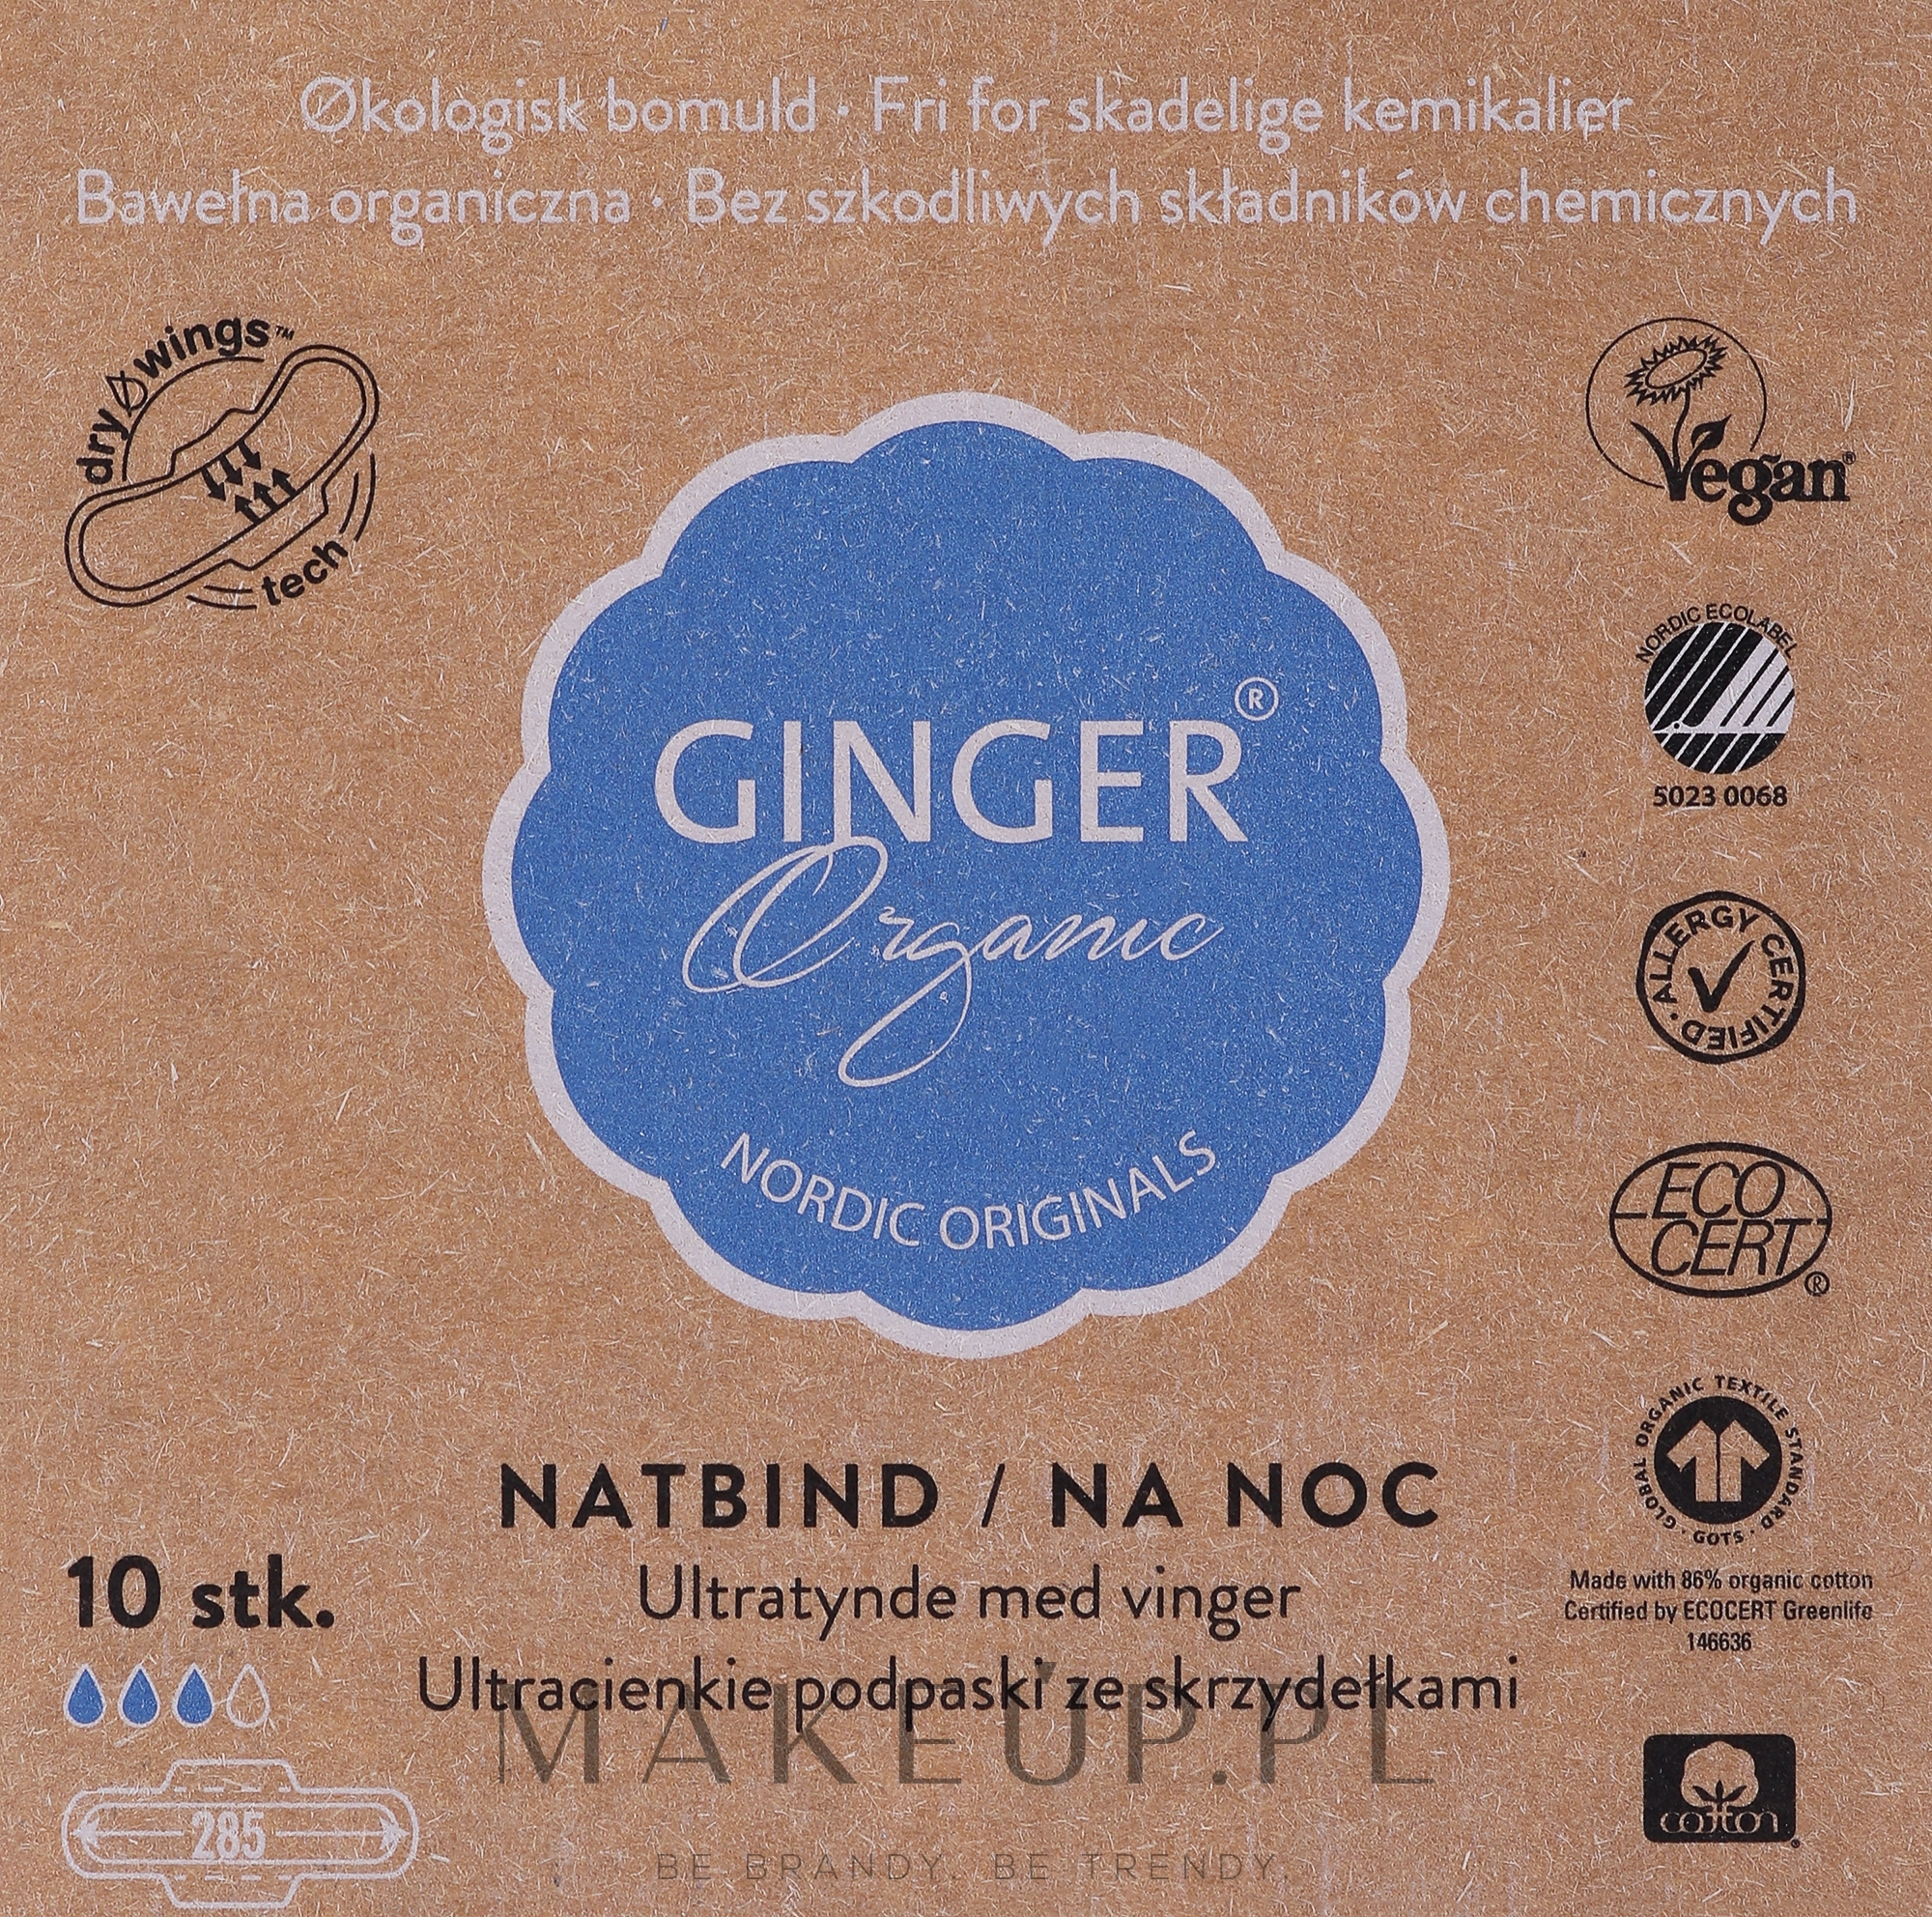 Organiczne podpaski na noc, 10 szt. - Ginger Organic — Zdjęcie 10 szt.